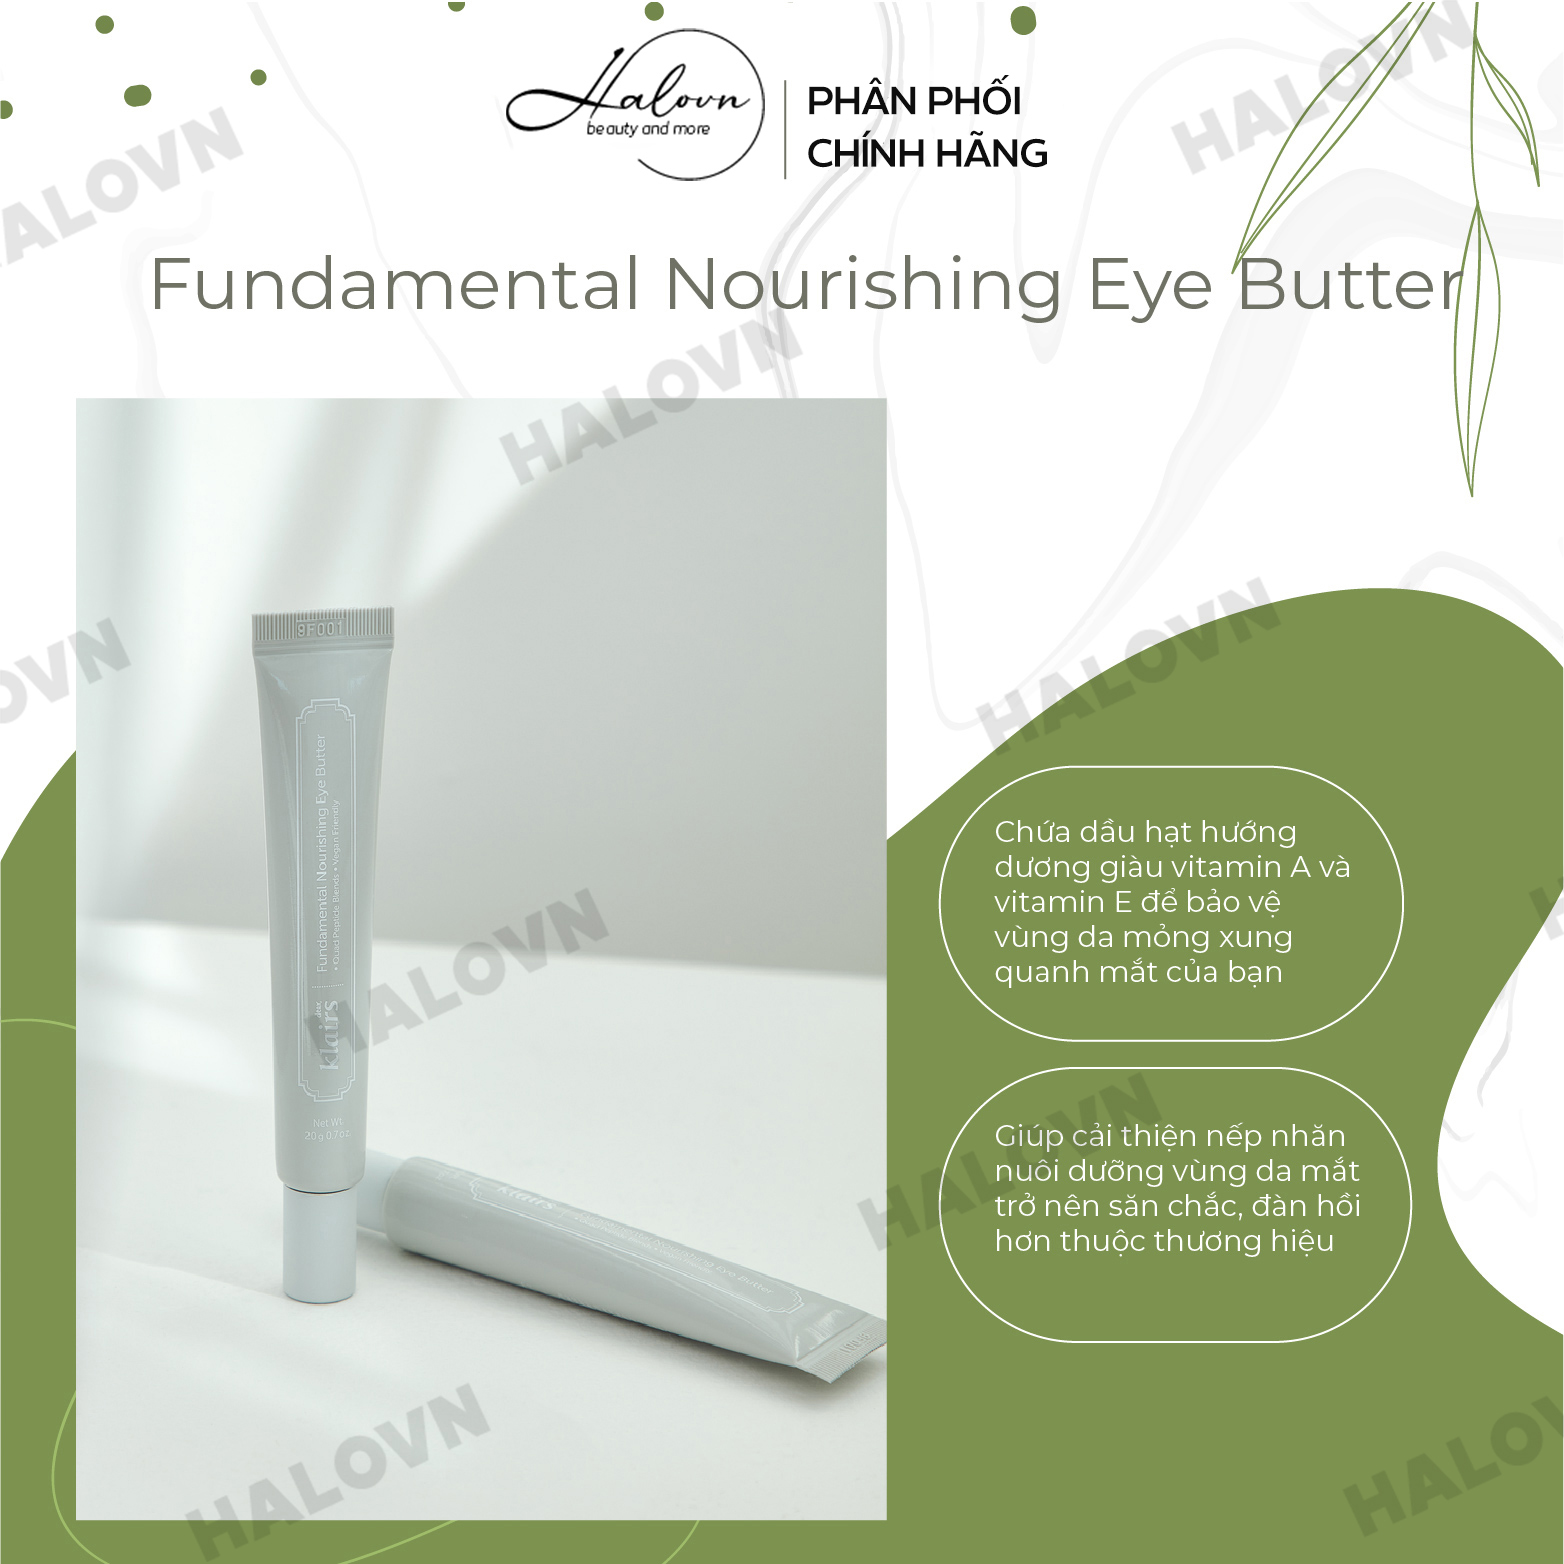 Kem Dưỡng Mắt Cải Thiện Nếp Nhăn Dear, Klairs Fundamental Nourishing Eye Butter 20g